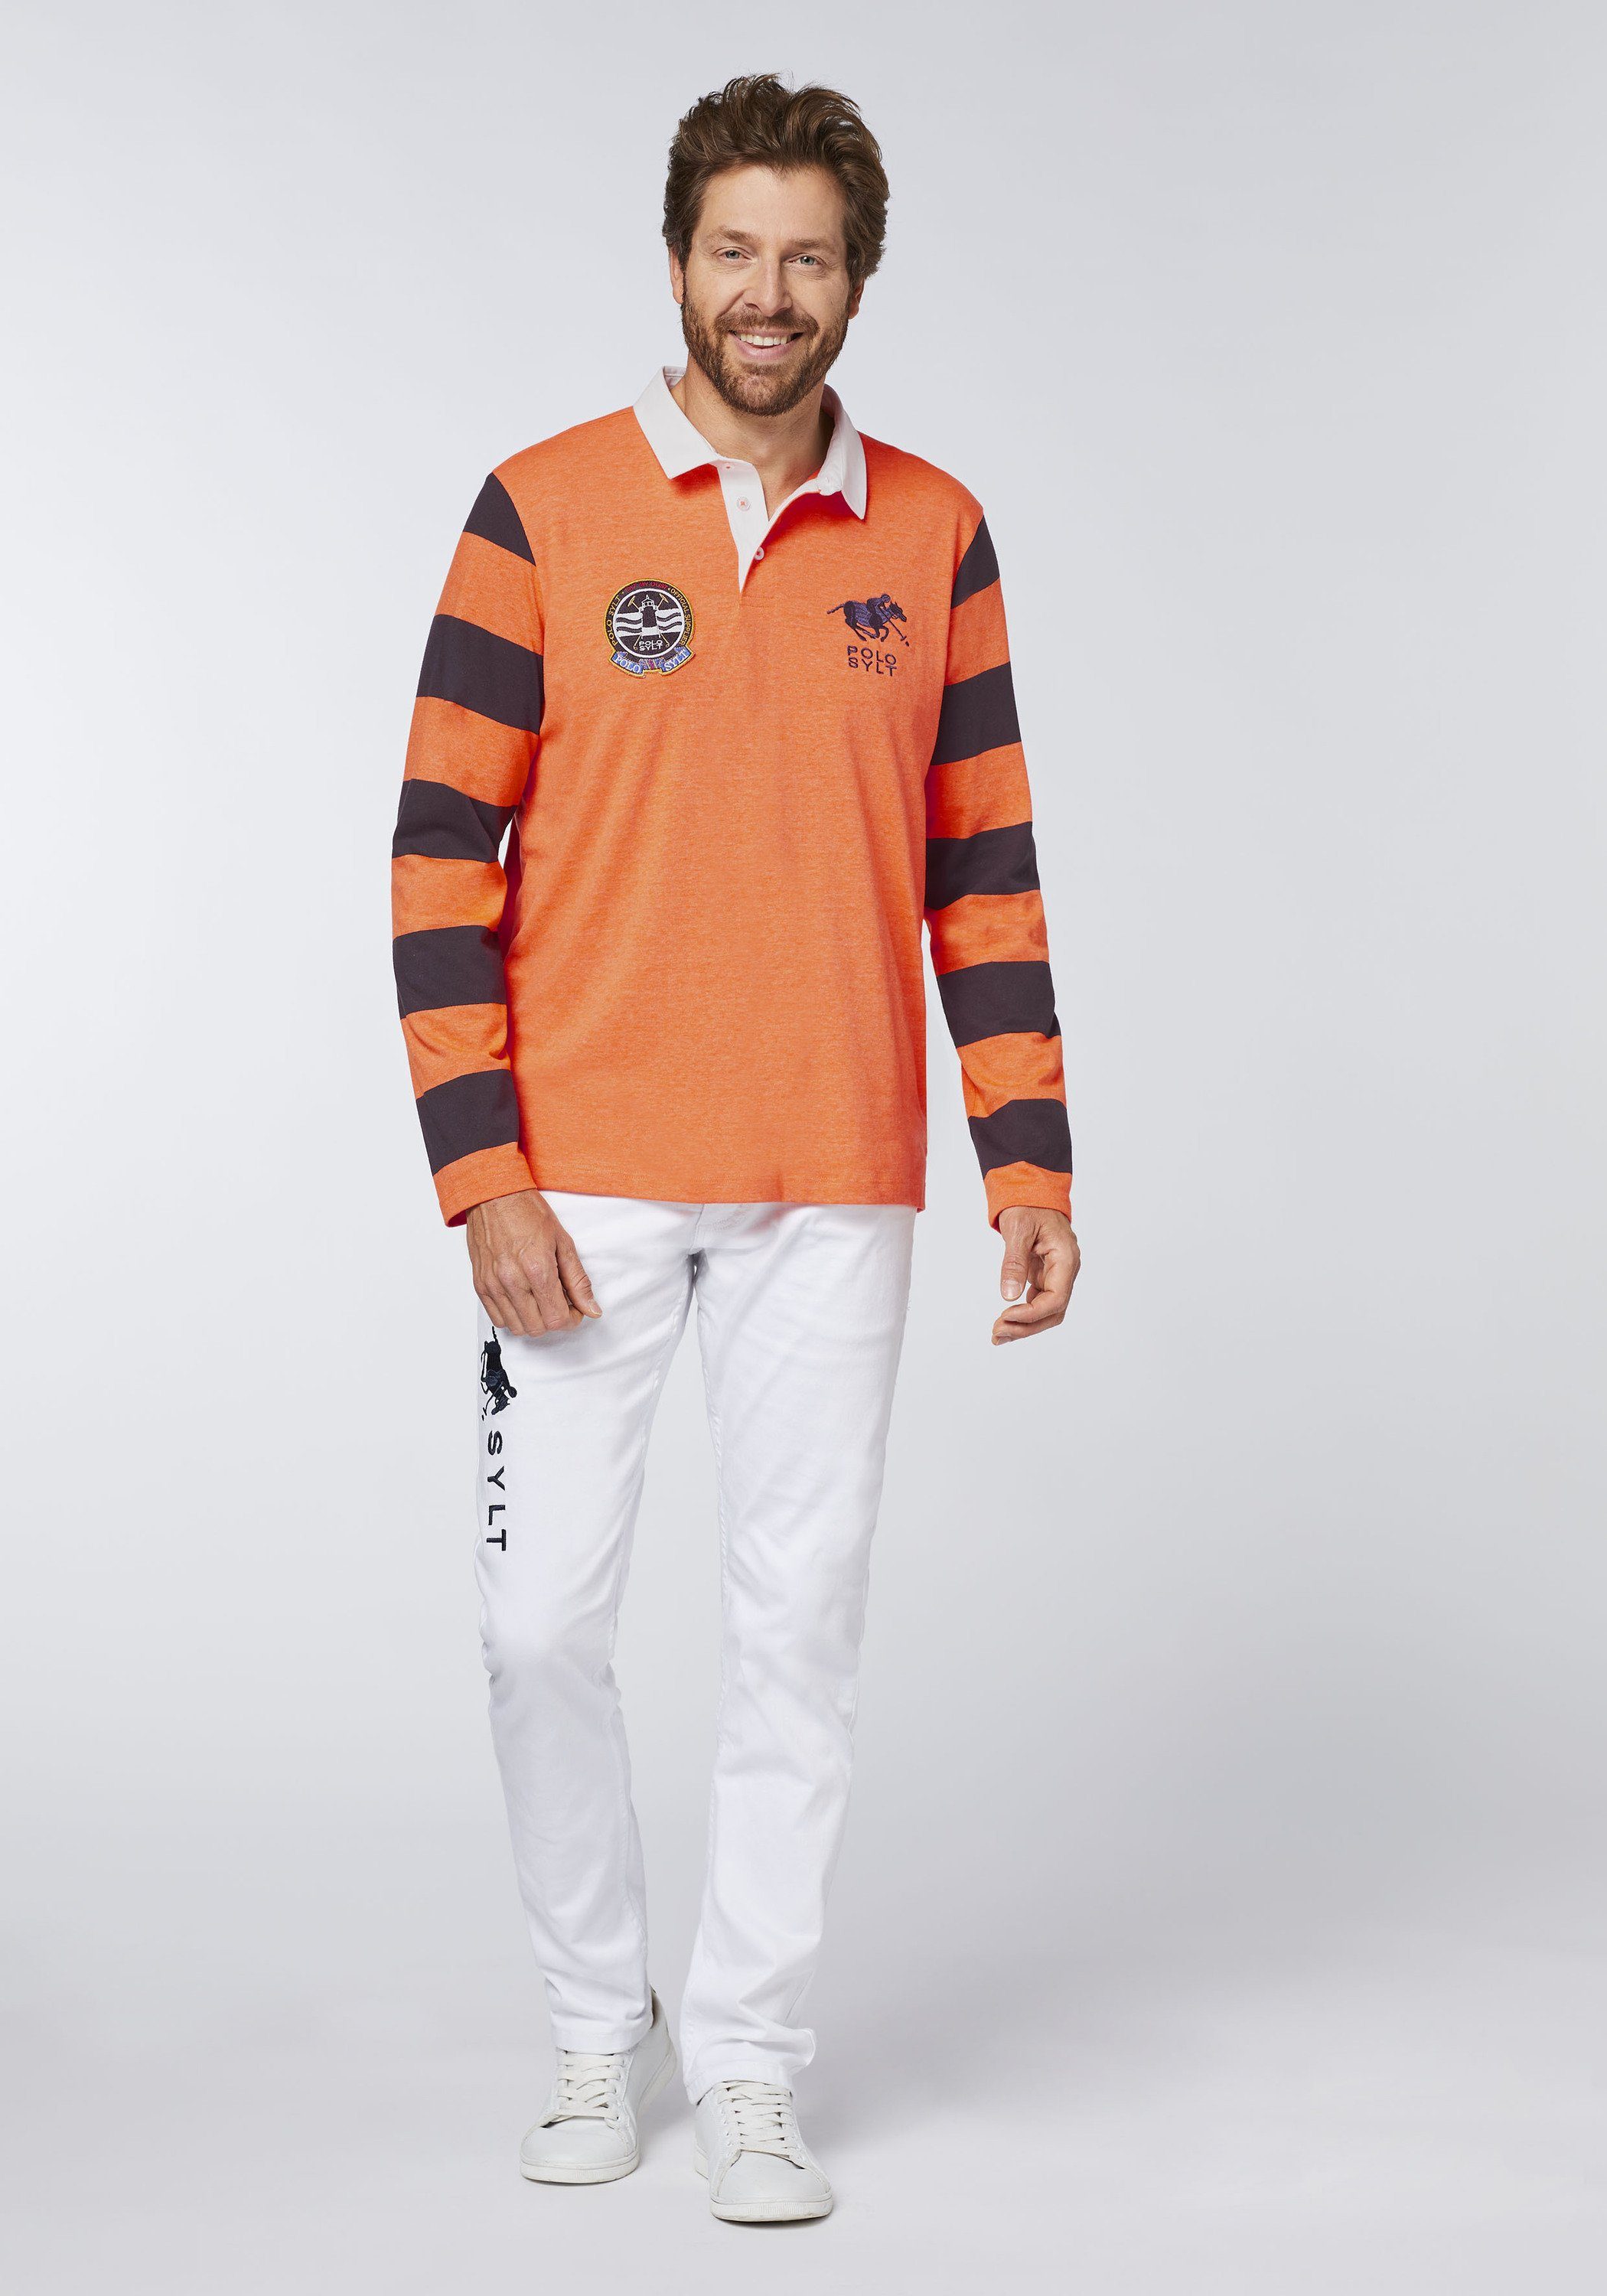 Poloshirt im mit Ärmeln Shocking Orange Sylt Polo 15-1360 Blockstreifendesign langen